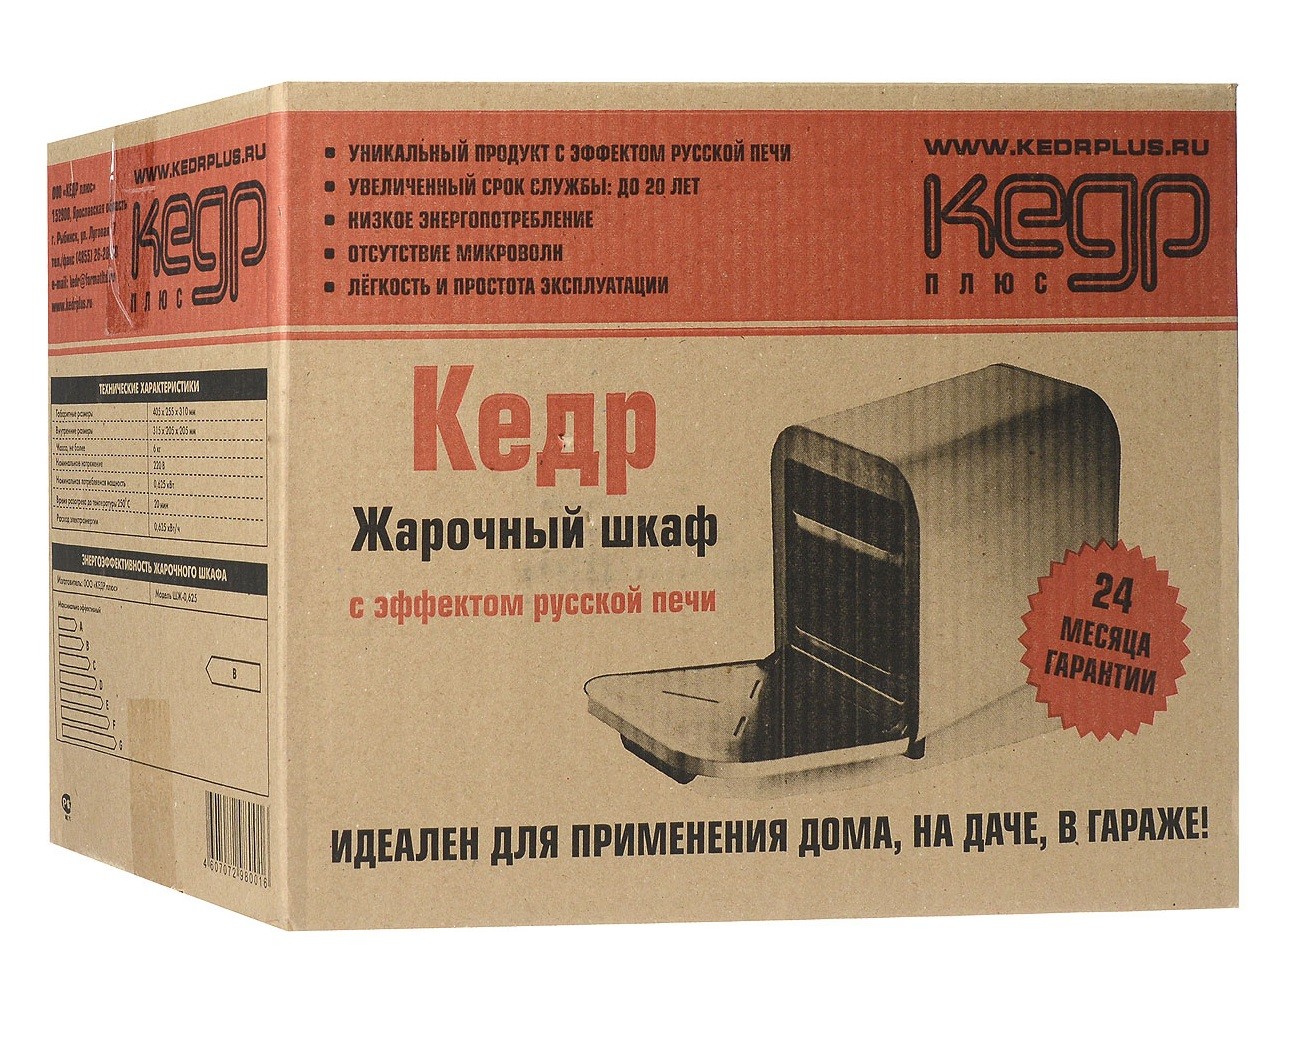 Шкаф жарочный Кедр 0.625 коробка